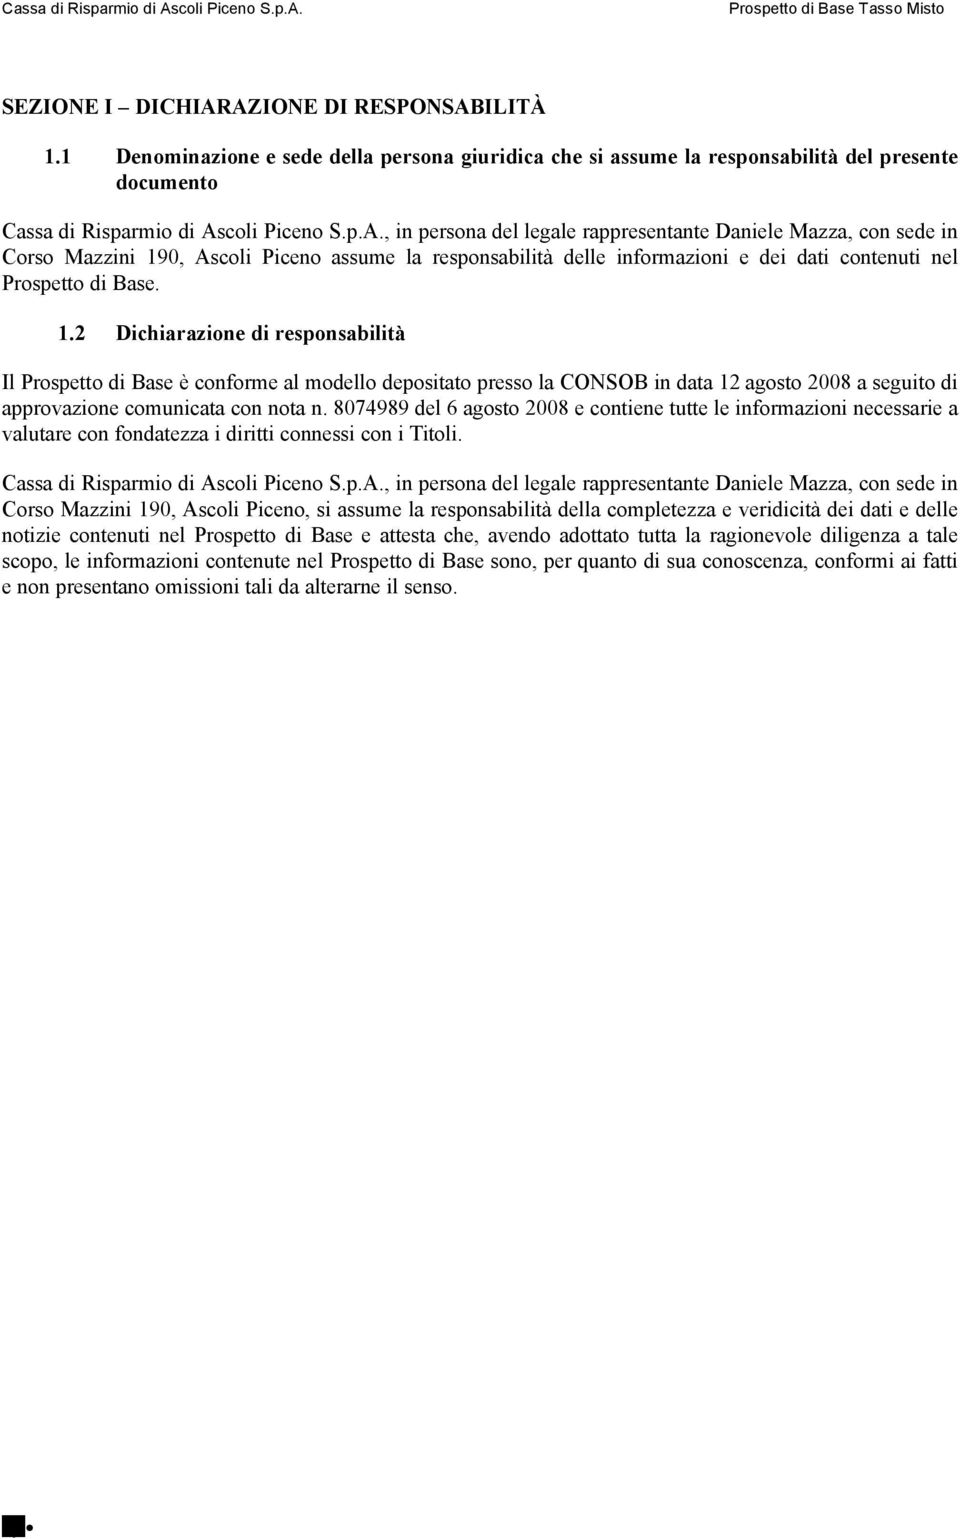 1.2 Dichiarazione di responsabilità Il Prospetto di Base è conforme al modello depositato presso la CONSOB in data 12 agosto 2008 a seguito di approvazione comunicata con nota n.